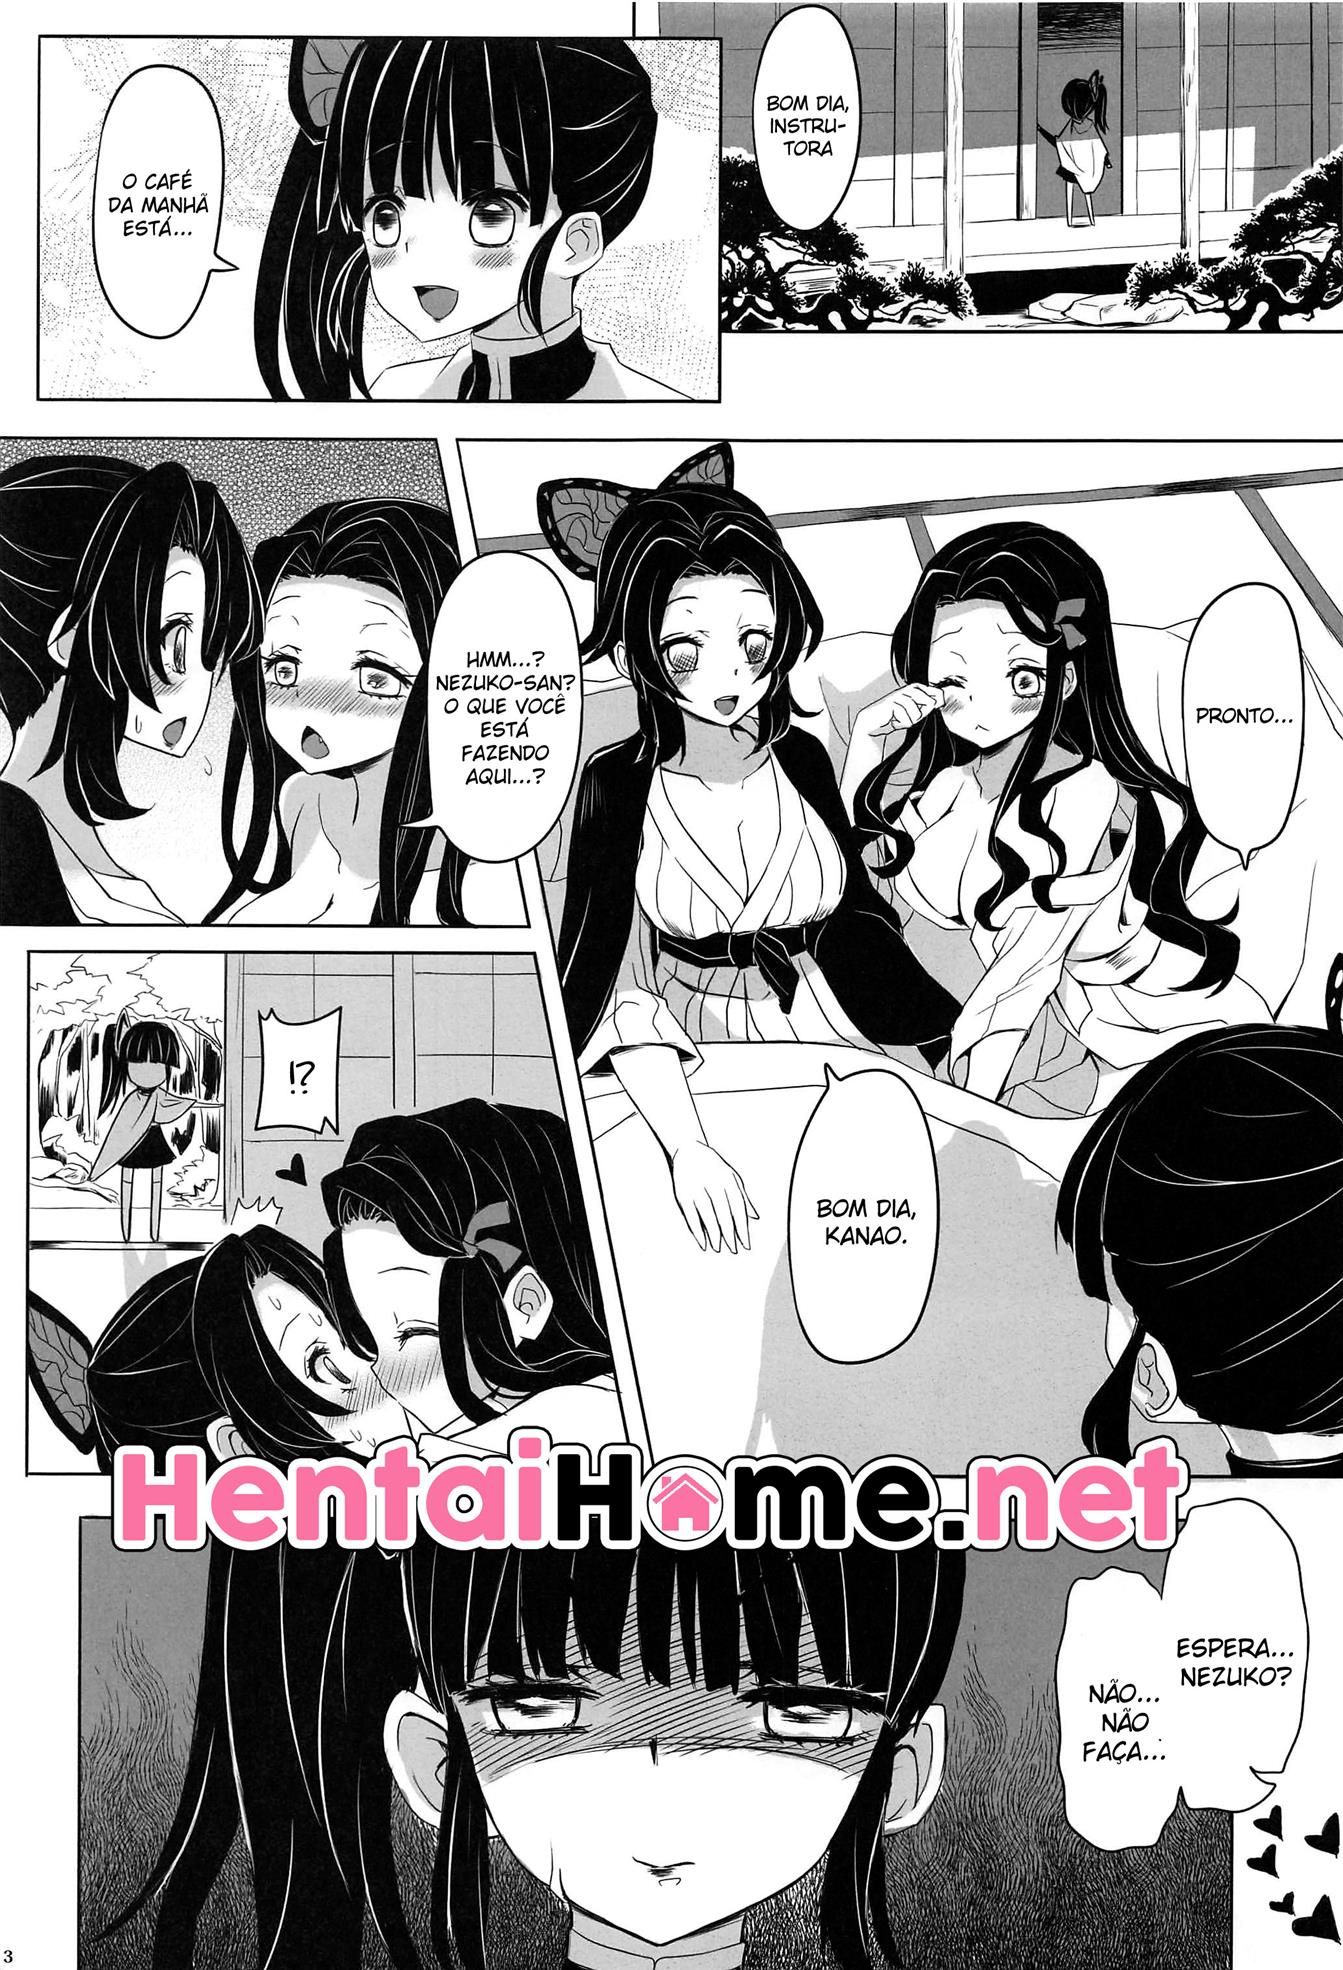 Por favor! Faça sexo com à Nezuko! (4)